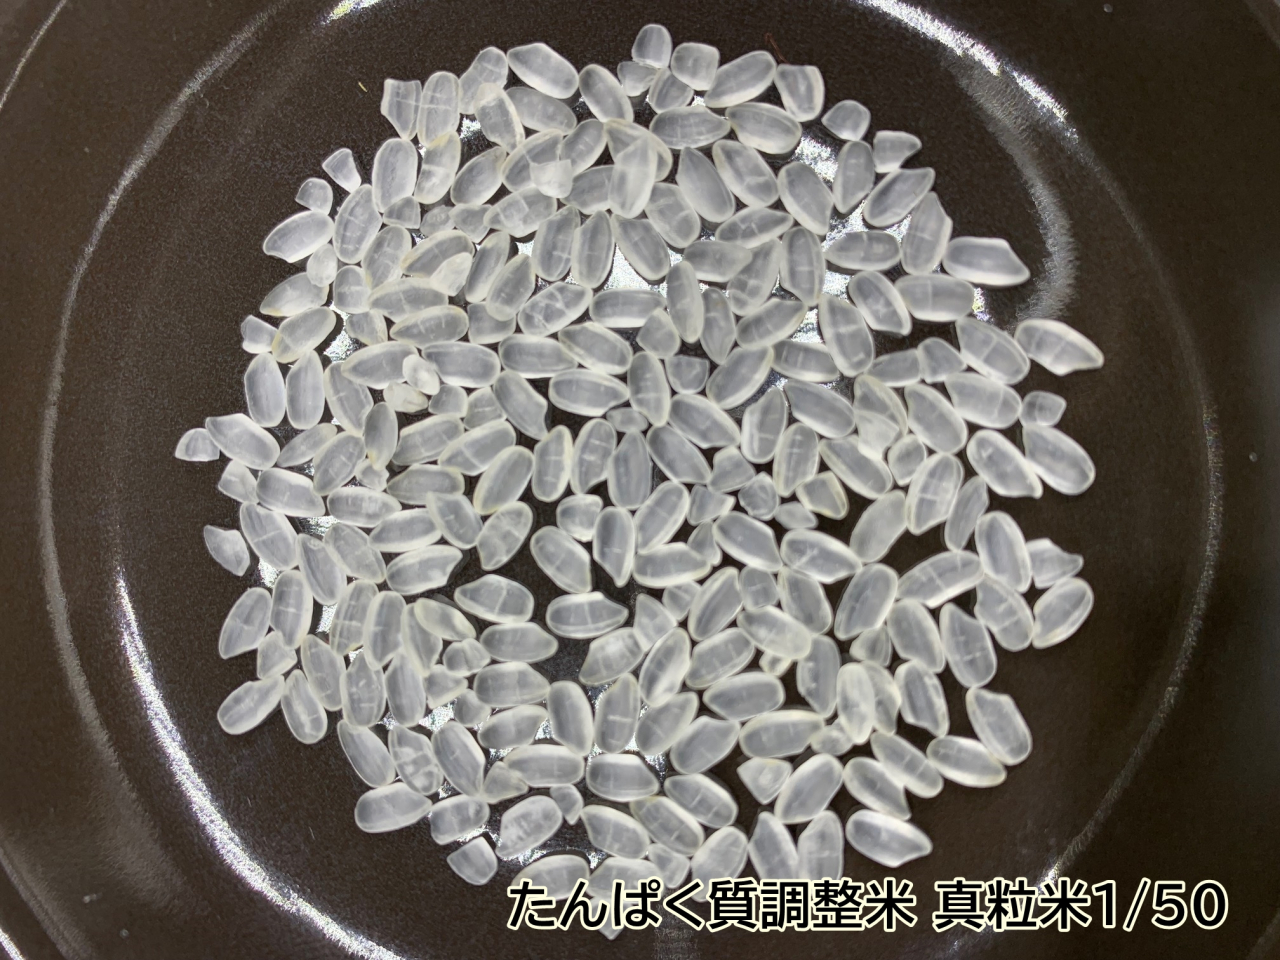 冬バーゲン☆】 たんぱく質調整米 真粒米1 50(国産米使用) 2kg ビタミン